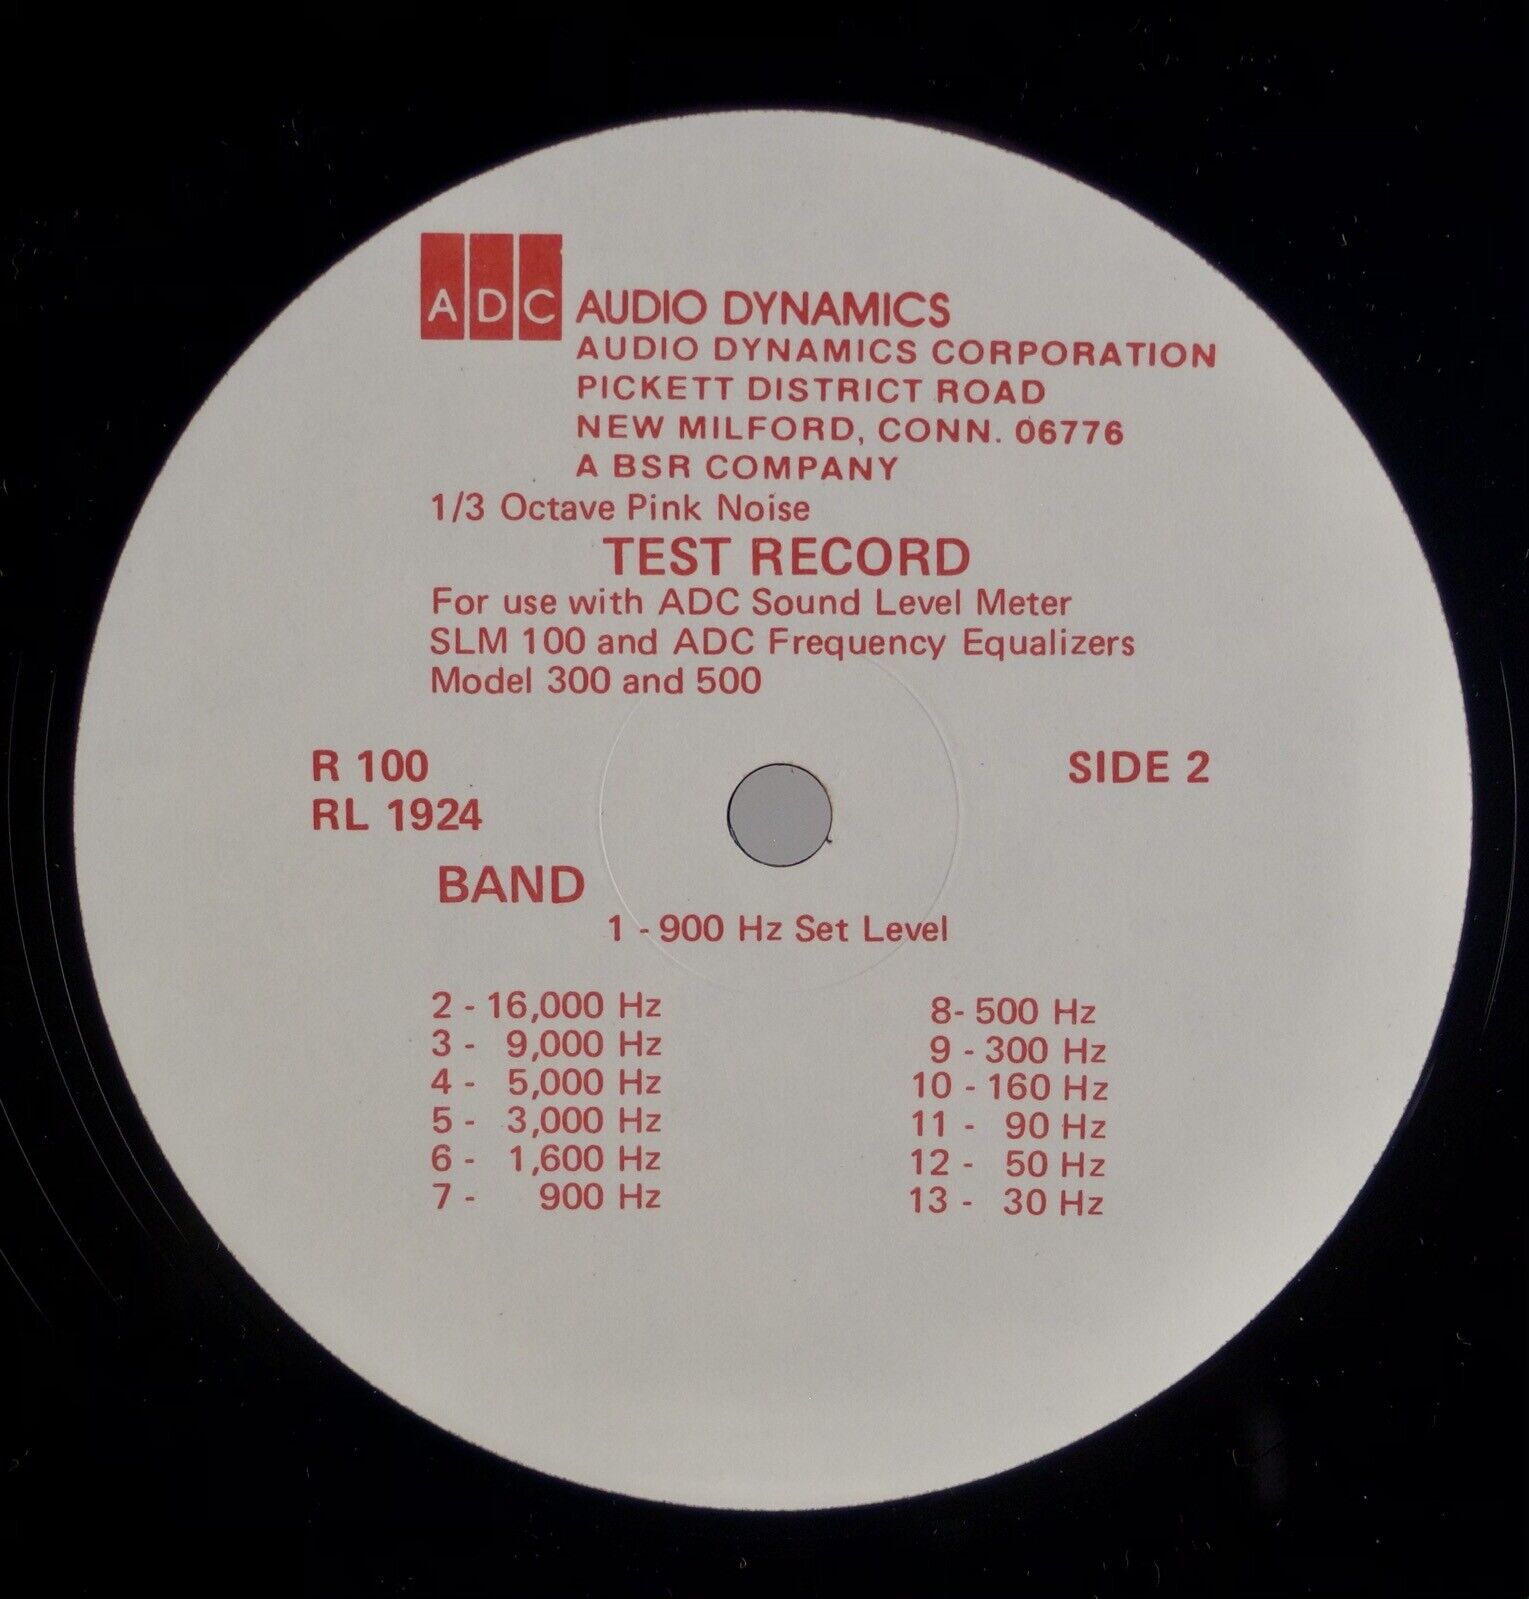 AUDIO DYNAMICS: Test Record BSR Vintage Audiophile 30 Hz Equalizer